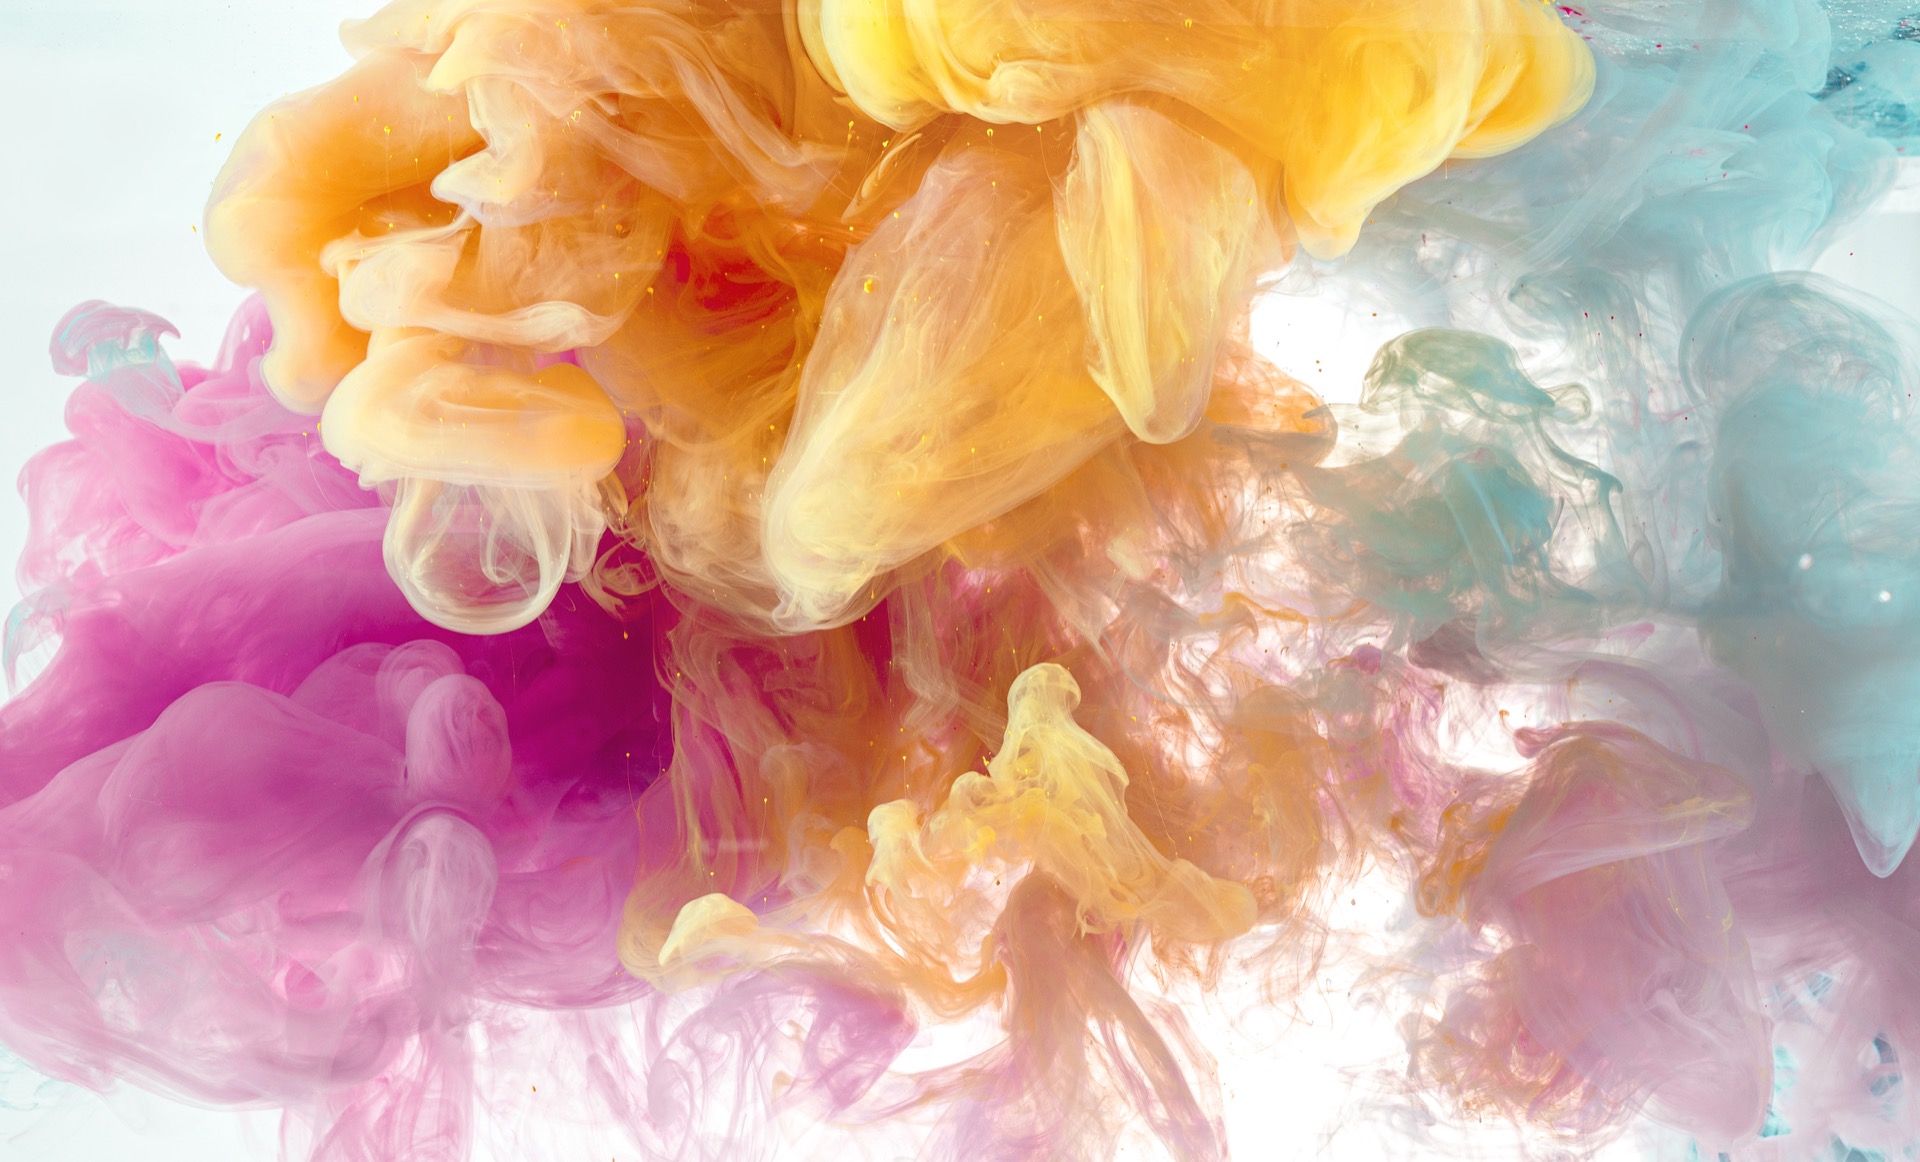 La synesthésie orgasmique consiste à éprouver des couleurs, des goûts ou des parfums, pendant l’acte sexuel. © luckybusiness, Adobe Stock